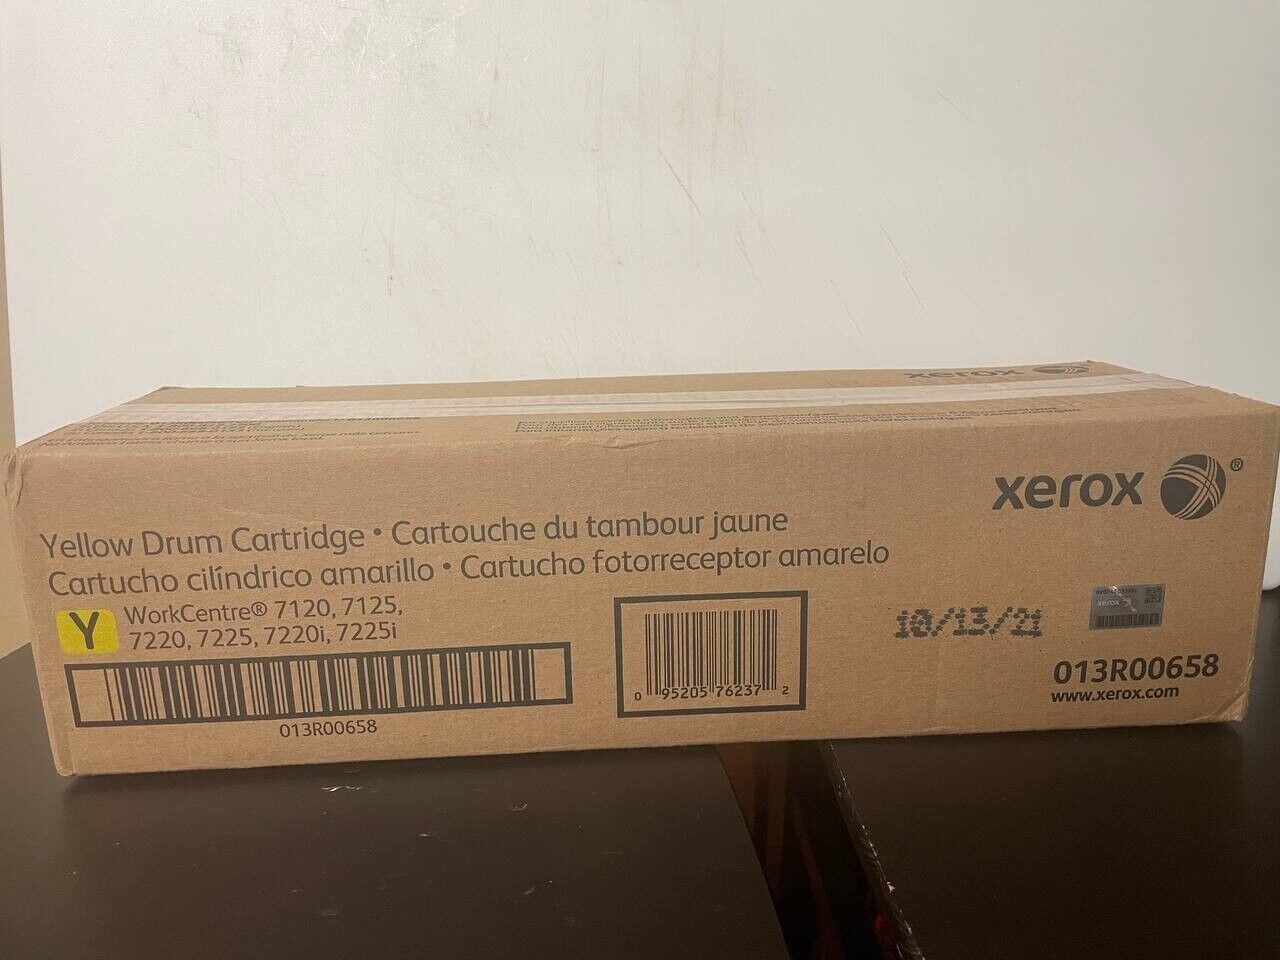 Genuine Xerox 013R00658 - Yellow Drum Cartridge - Brand New